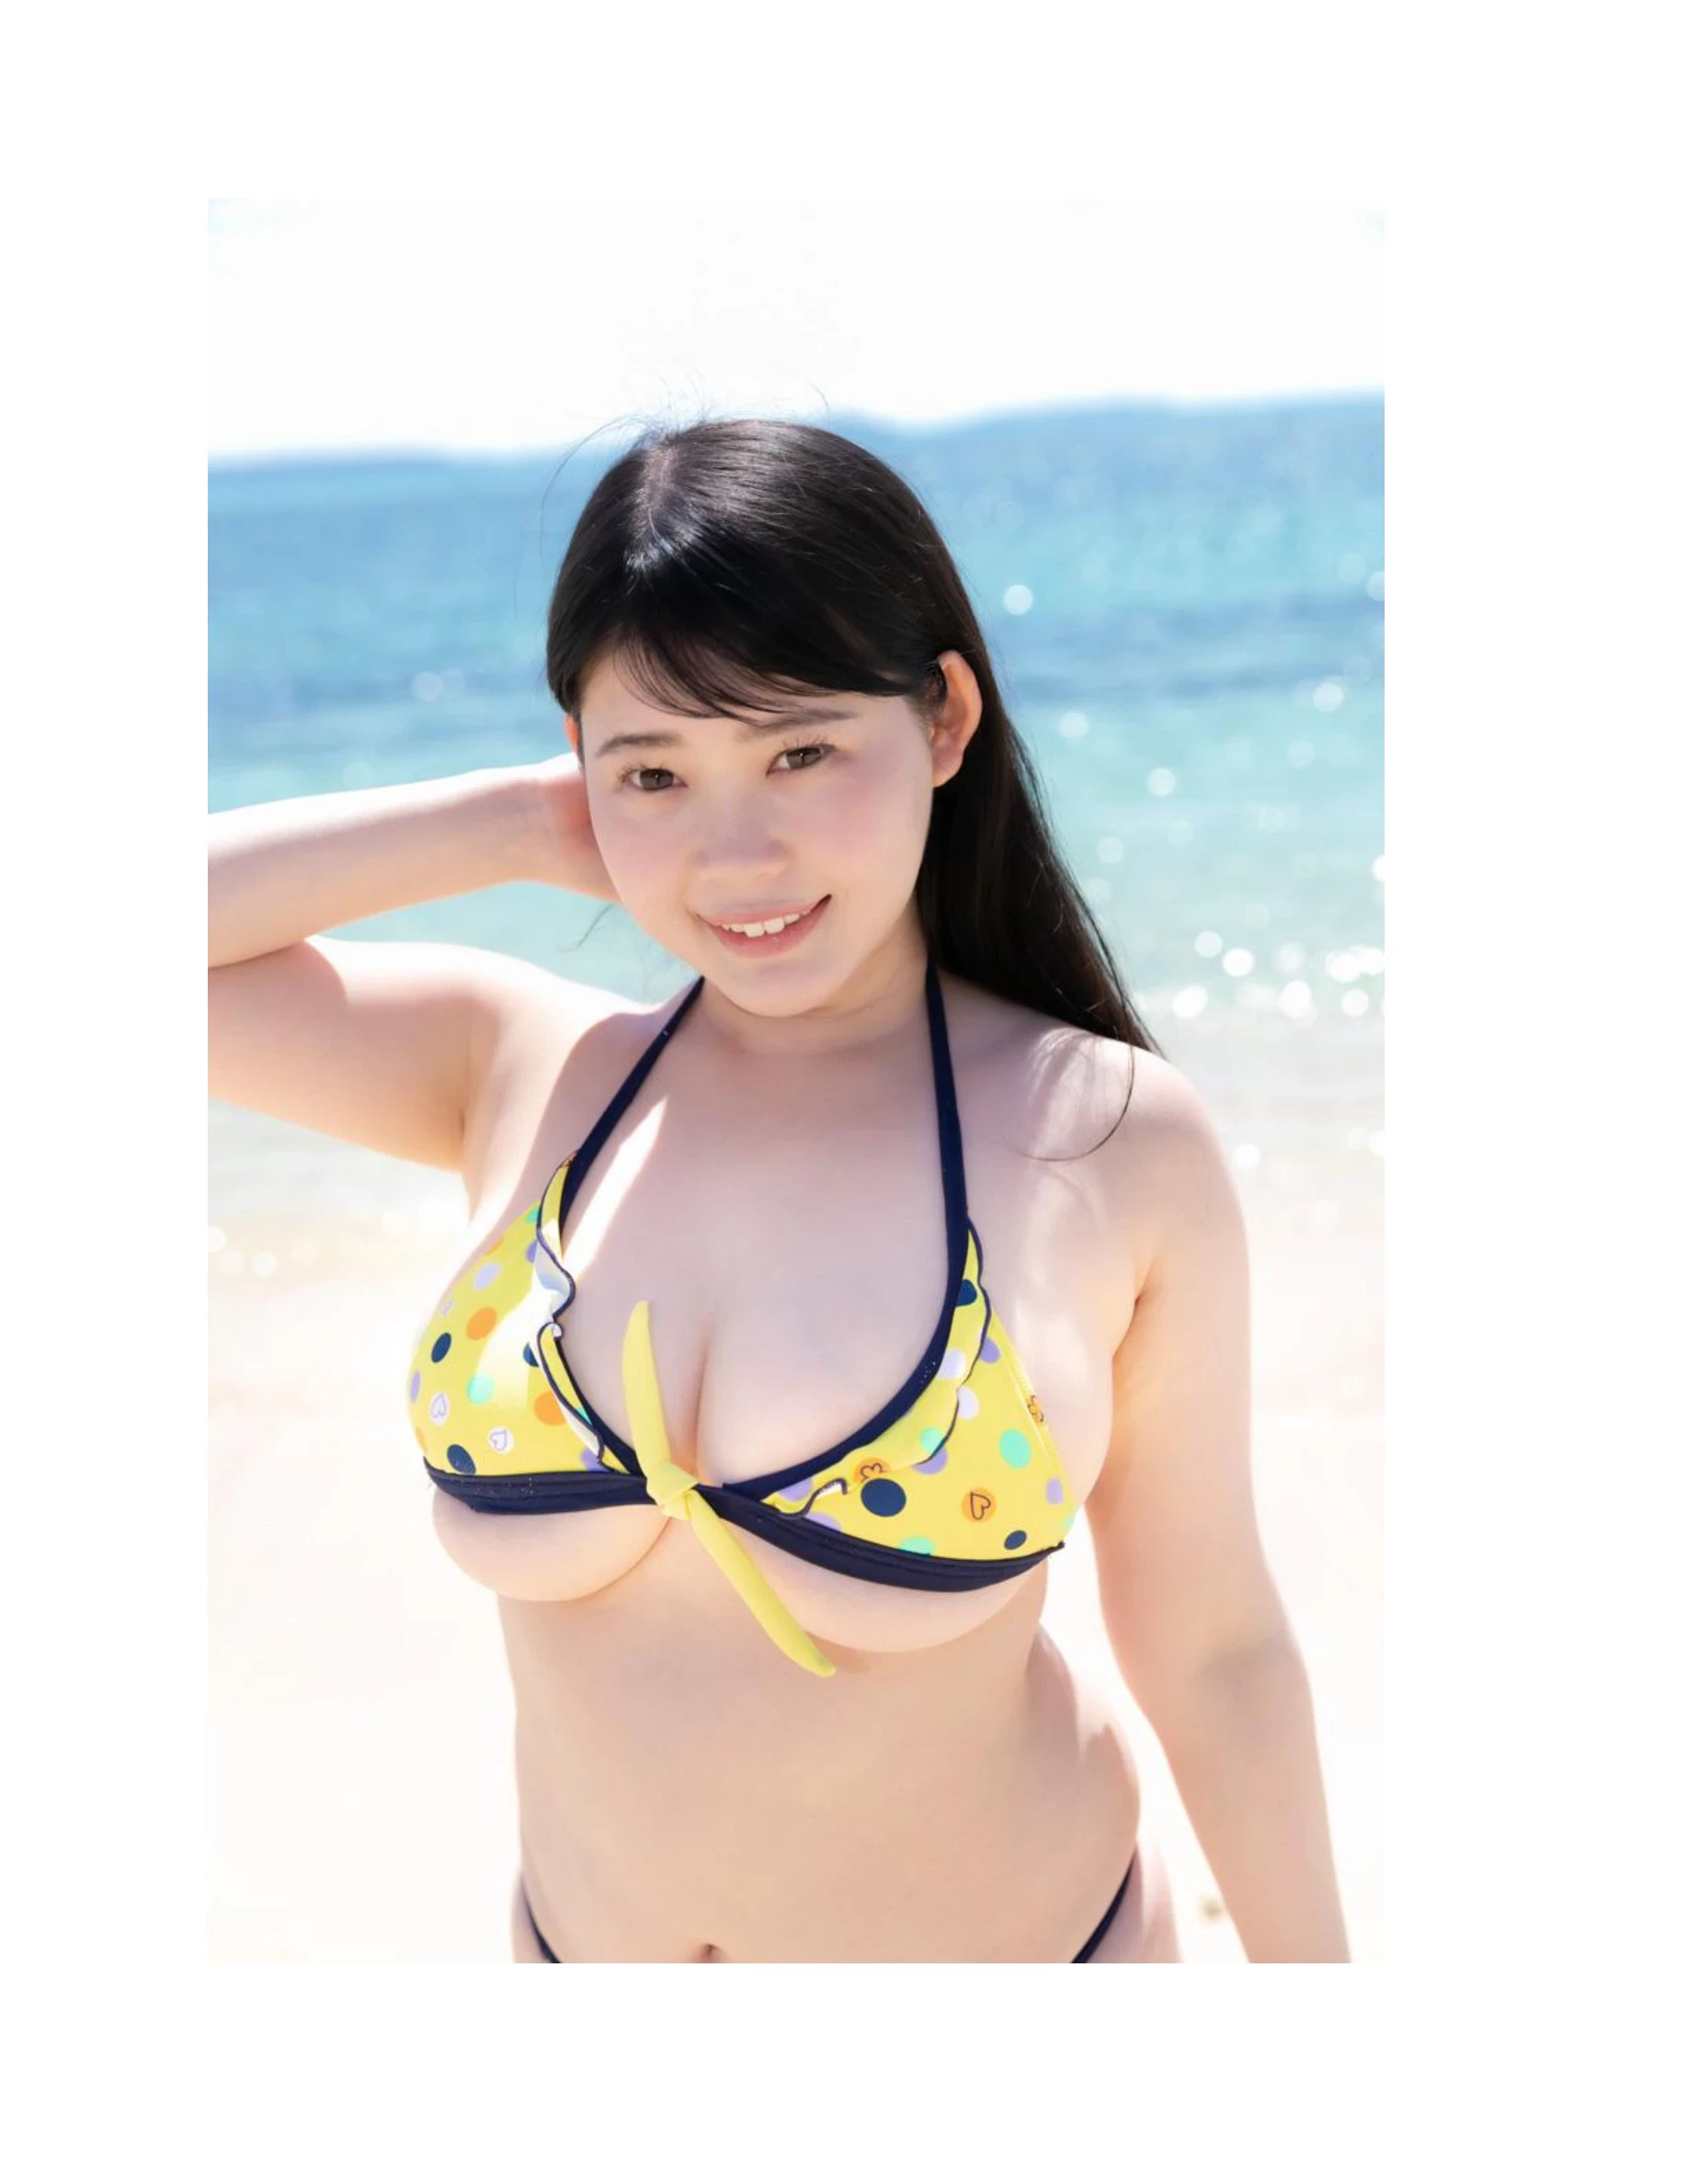 伊川愛梨 卒業旅行 夏 寫真集 J罩杯偶像美少女傳説-432